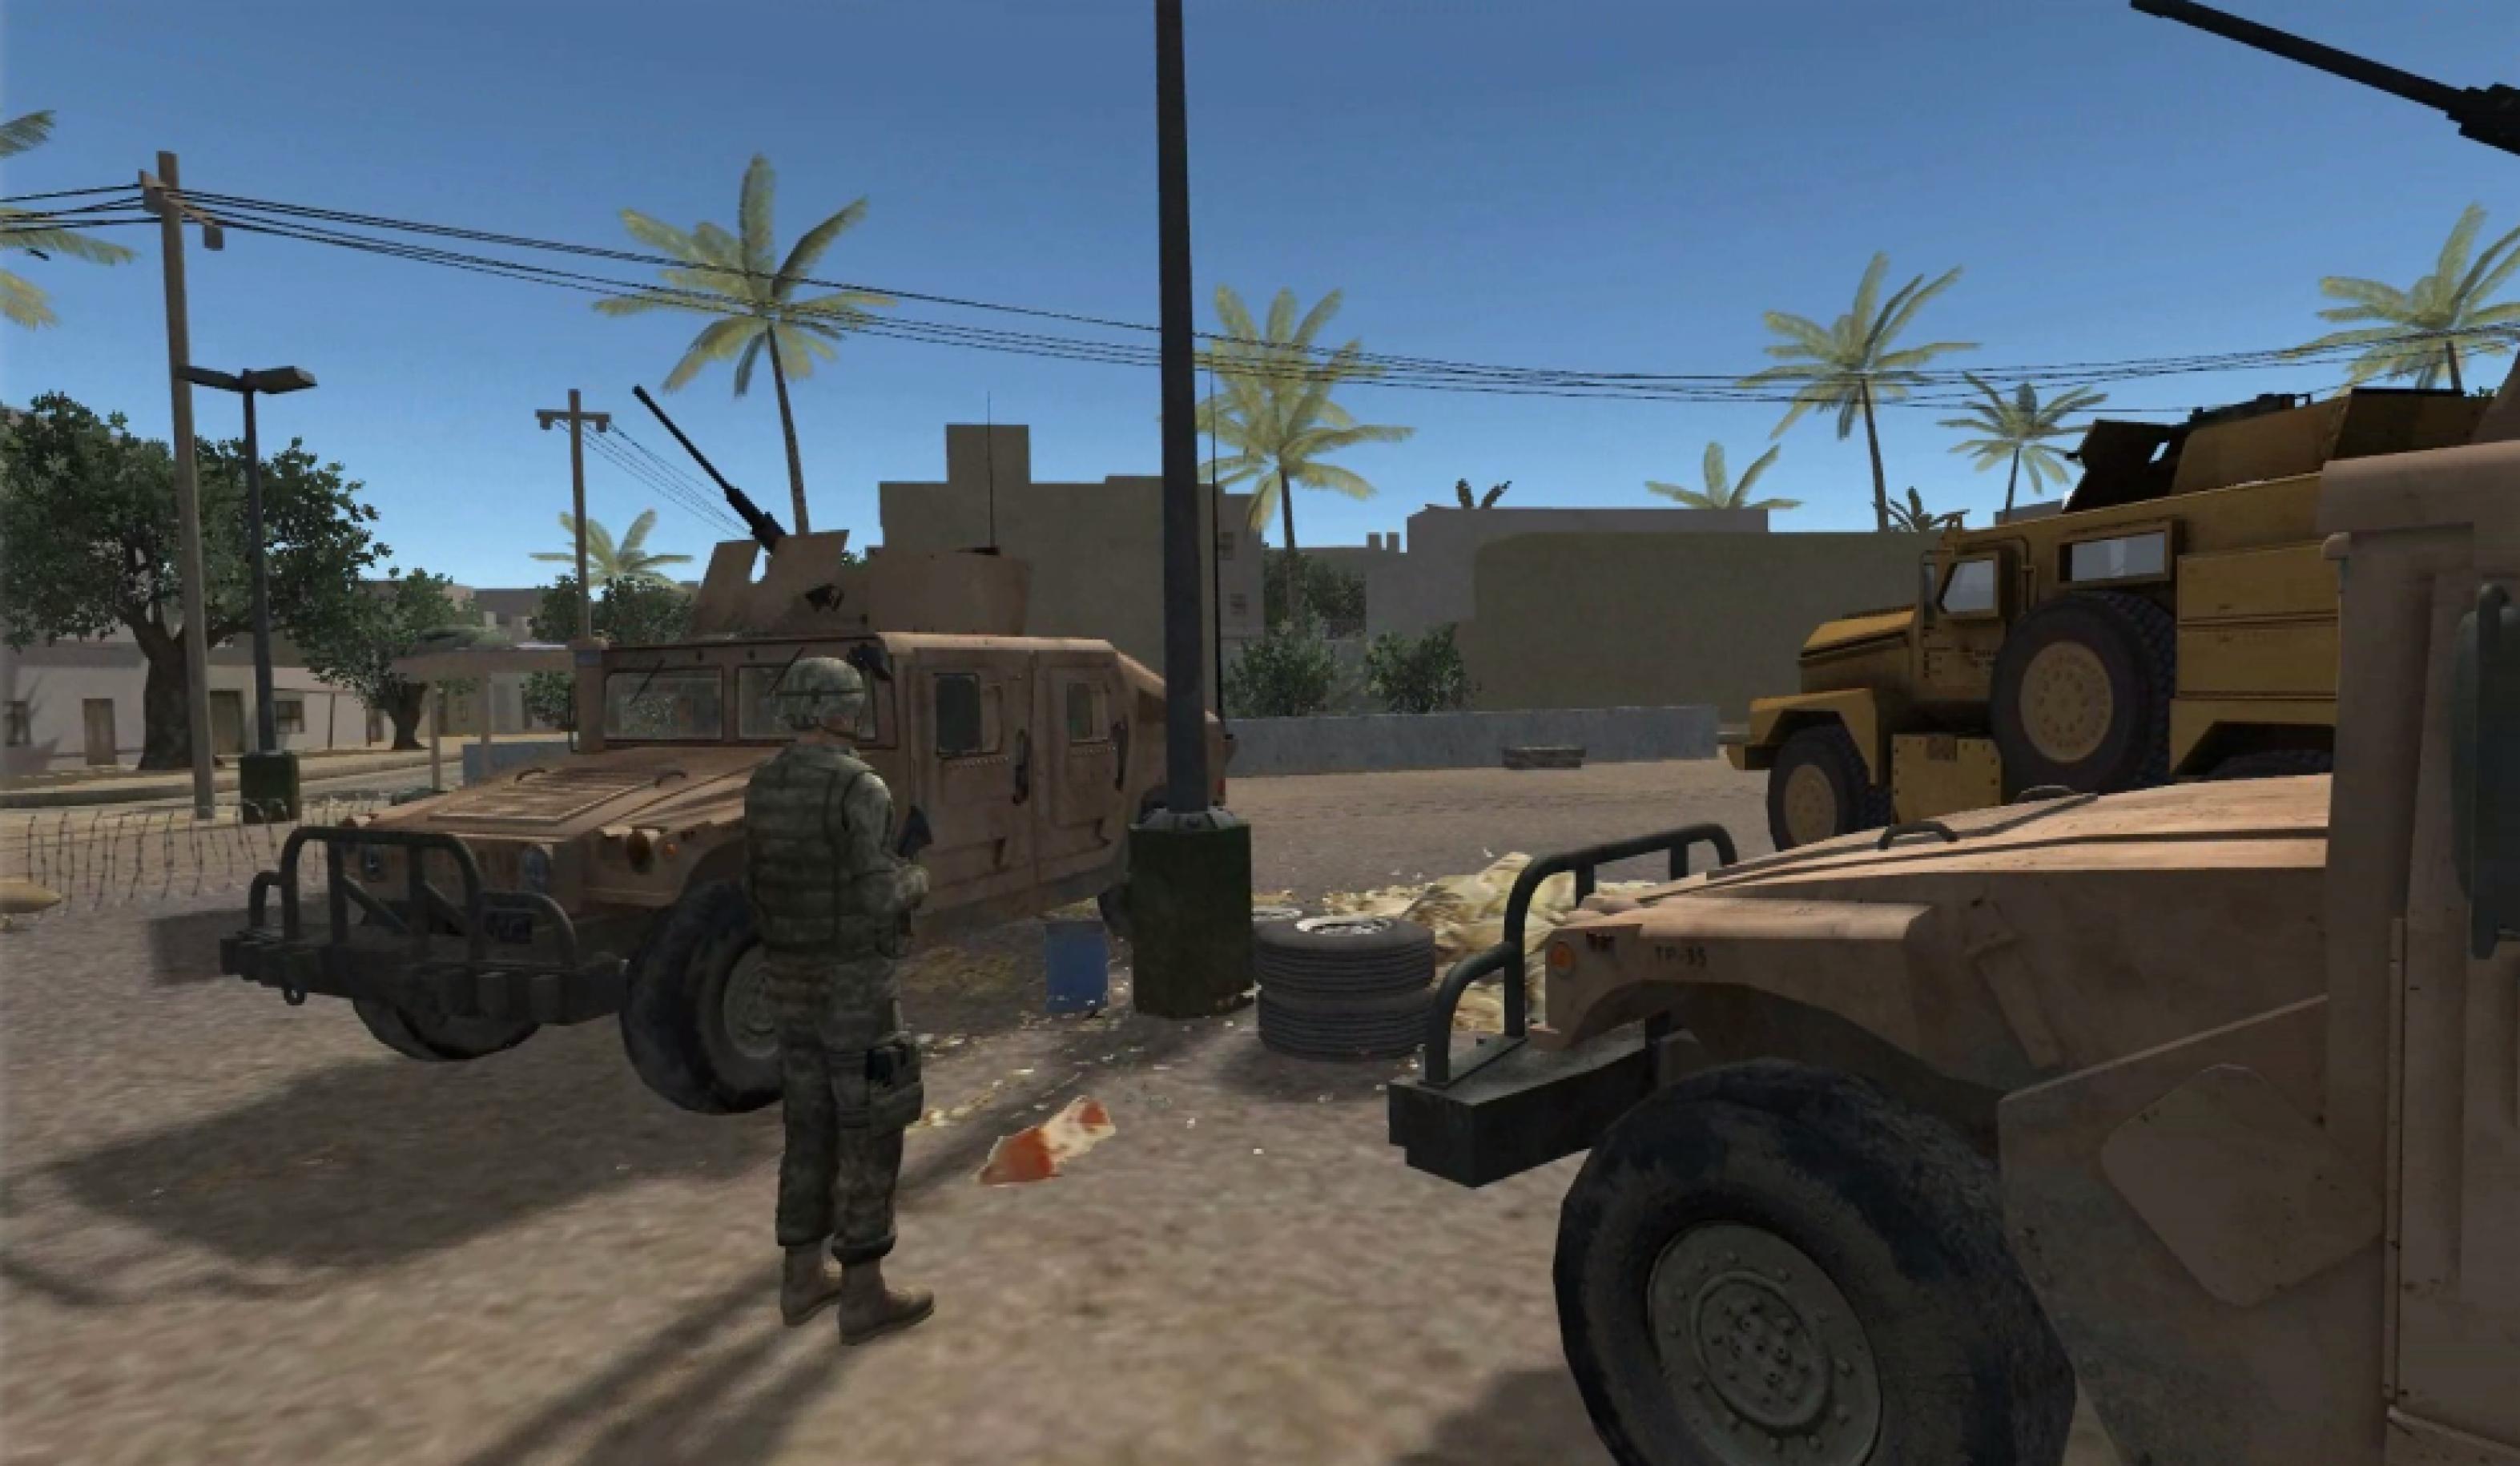 Eine Therapie-Szene in der virtuellen Realität: Ein Soldat steht auf einem sandigen Platz in einem kleinen afghanischen Dorf. Um ihn herumparken drei gepanzerte Militärfahrzeuge.